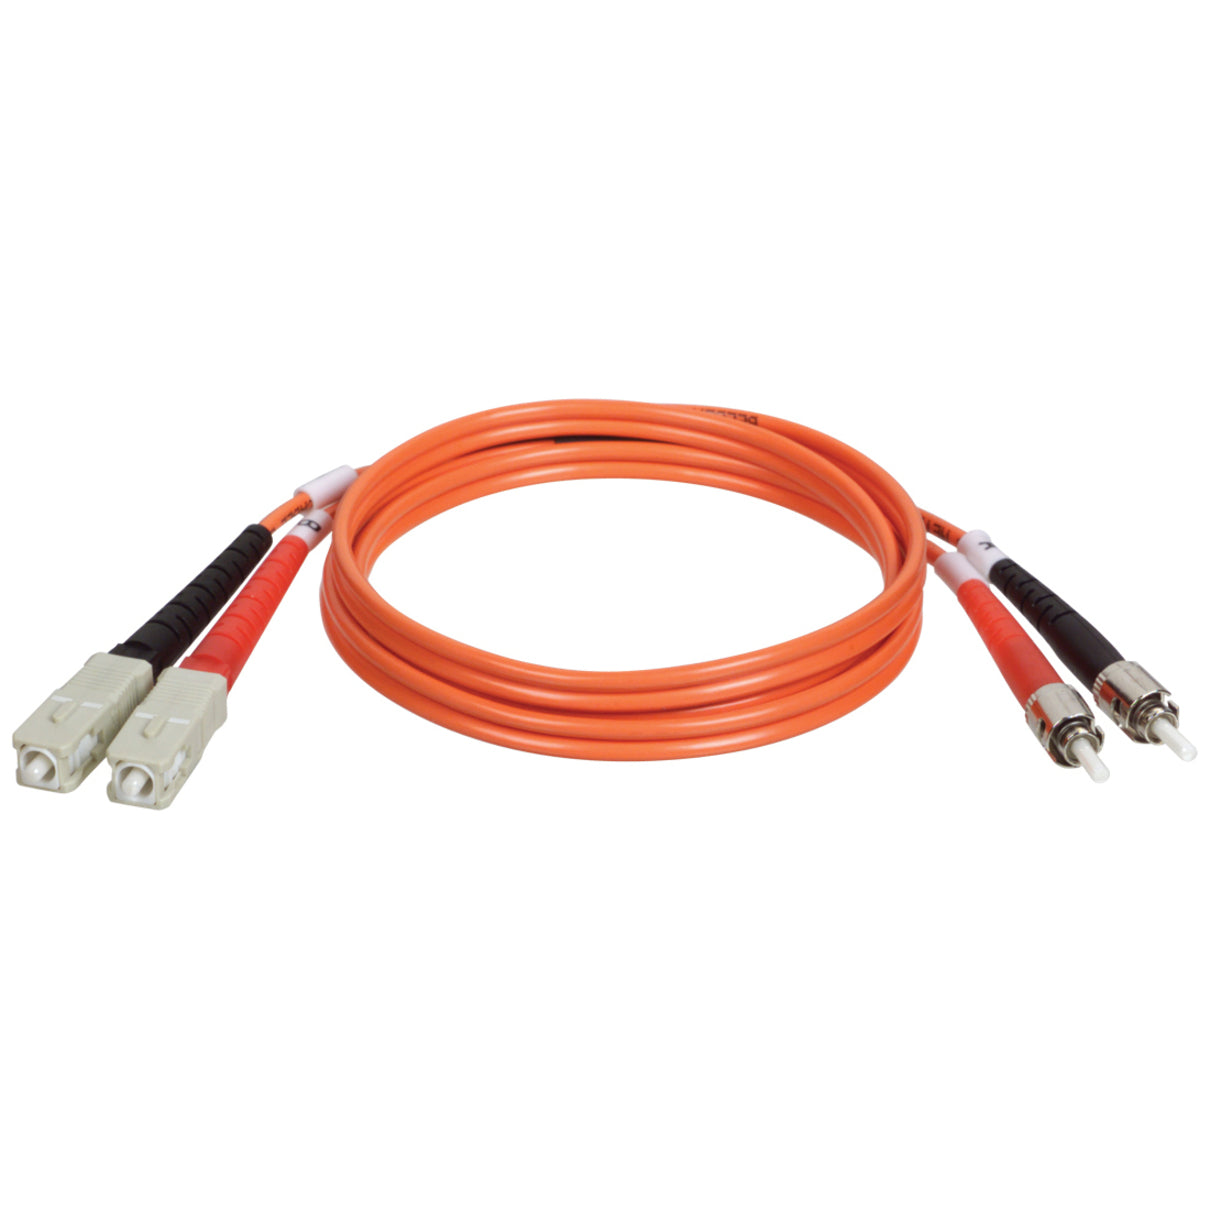 Tripp Lite N304-006 Duplex Fiber Optic Patch Cable, 6 ft, ST/SC 62.5/125 Fiber, Lifetime Warranty